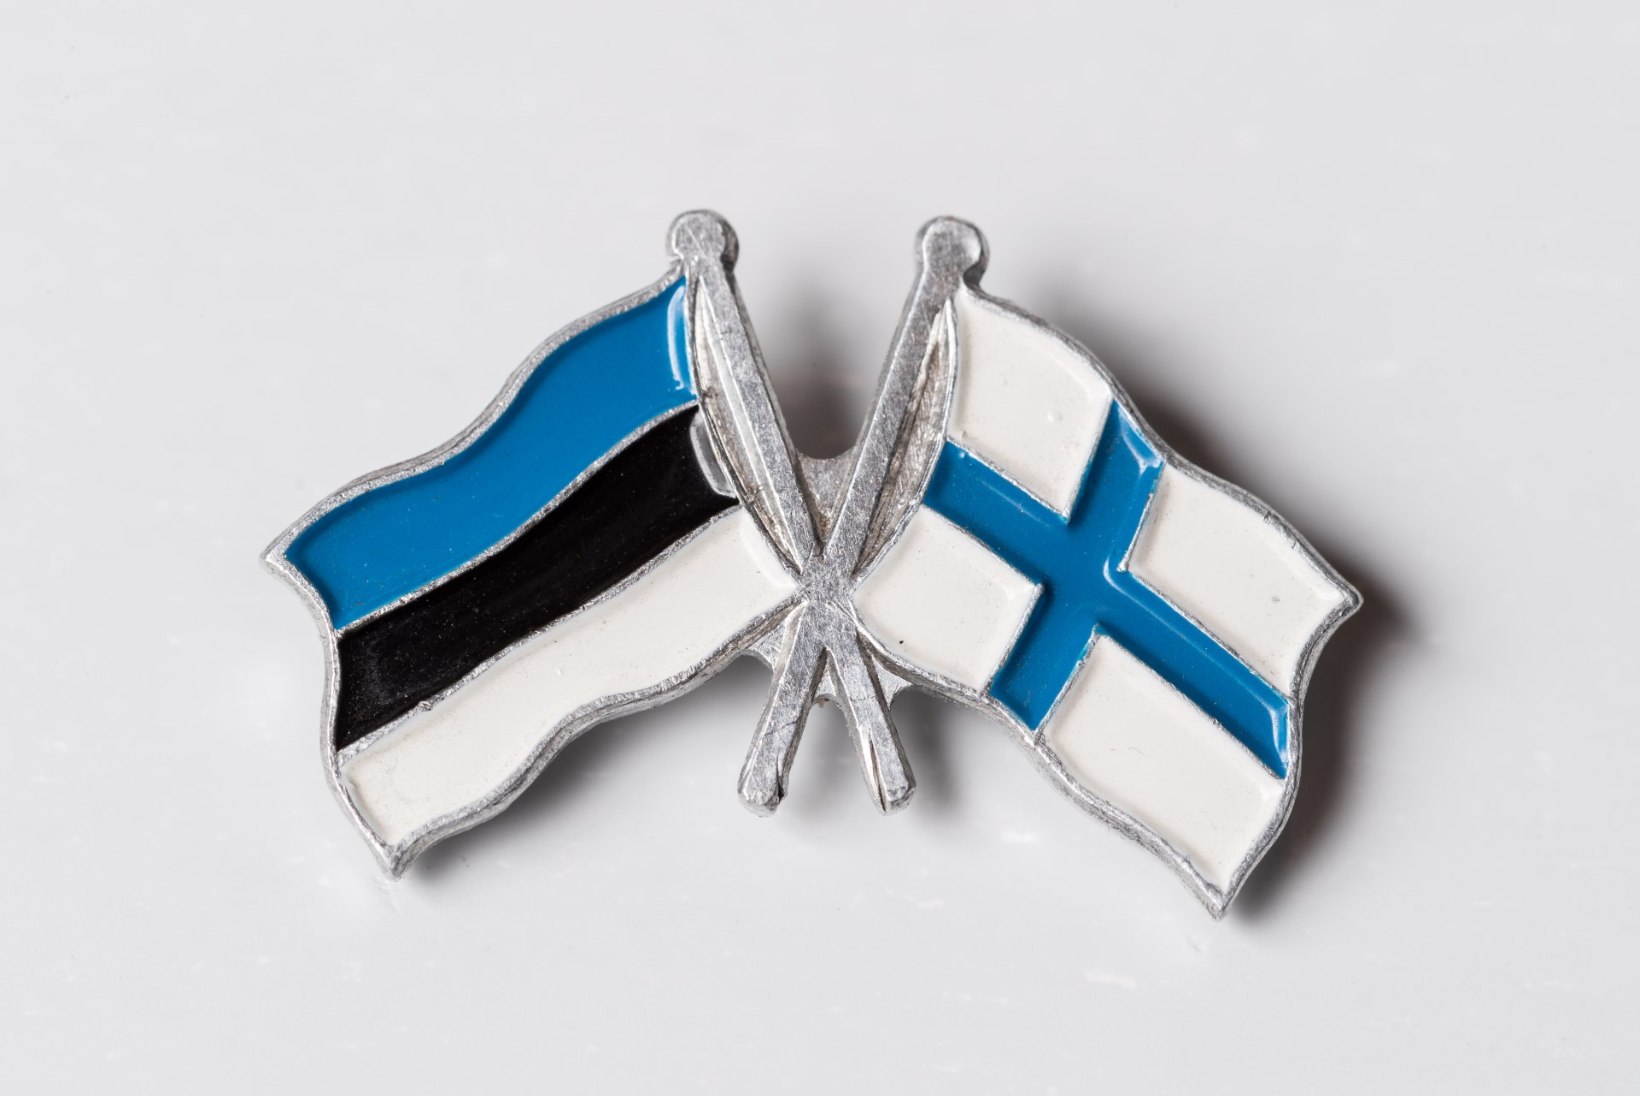 Soome suursaadik Eestis | Soome ja Eesti eesmärgid ühtivad